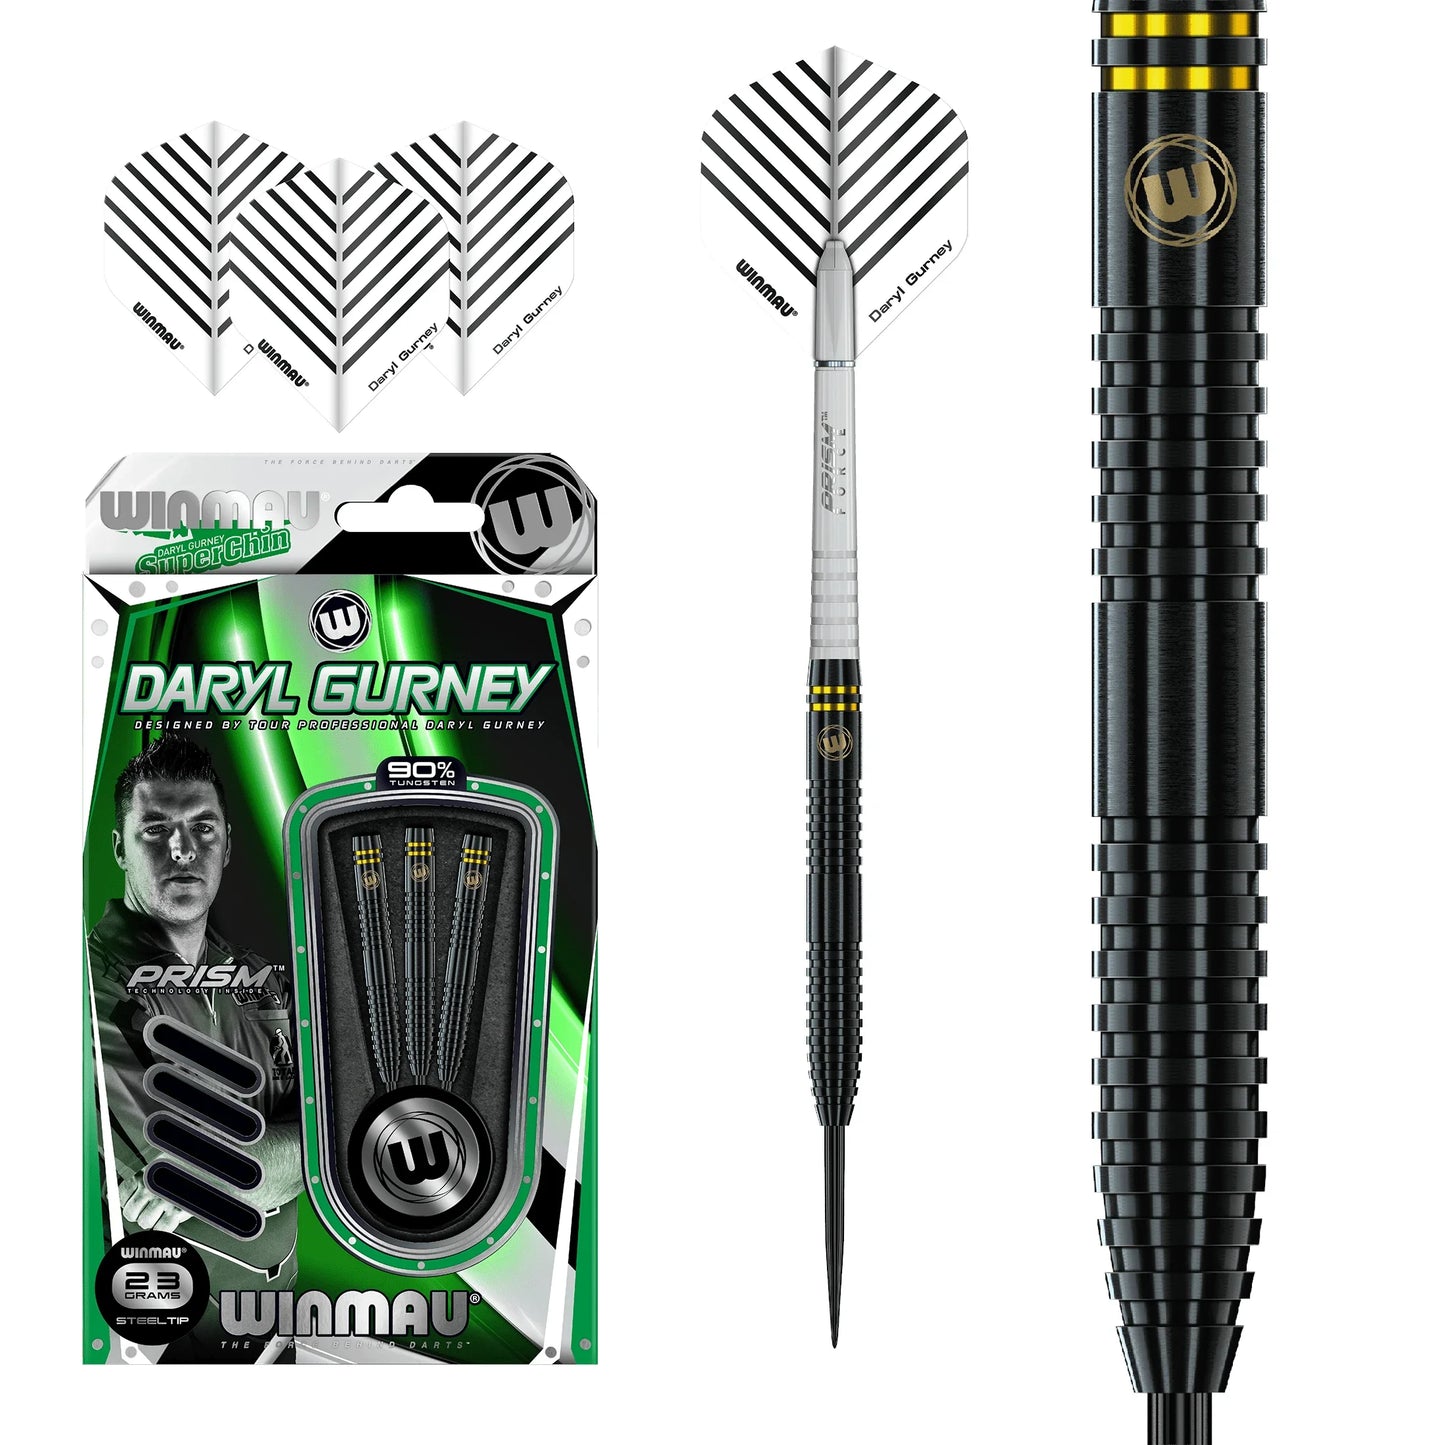 Winmau Daryl Gurney Black Edition 23g Darts